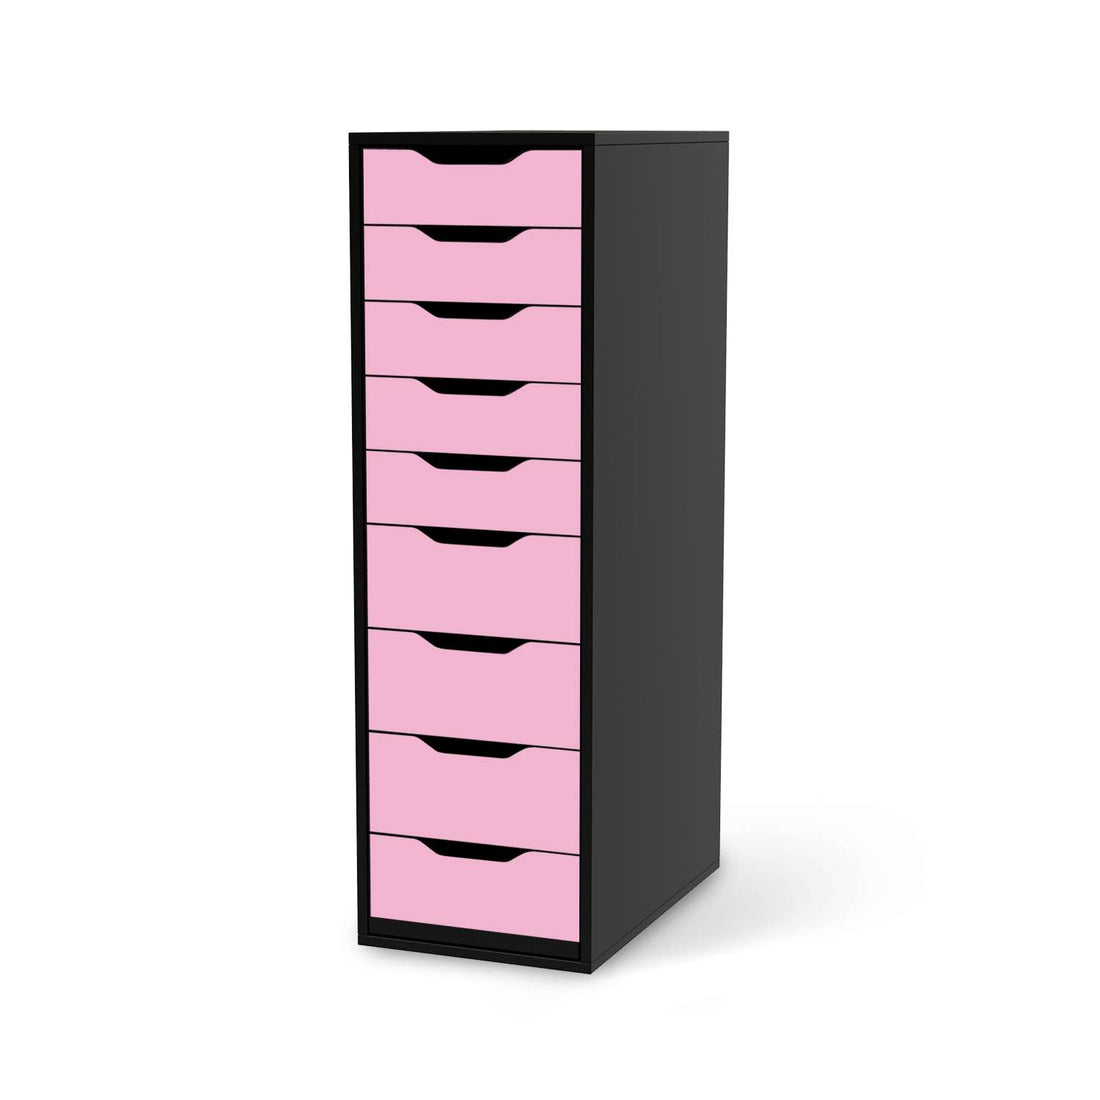 Folie für Möbel Pink Light - IKEA Alex 9 Schubladen - schwarz